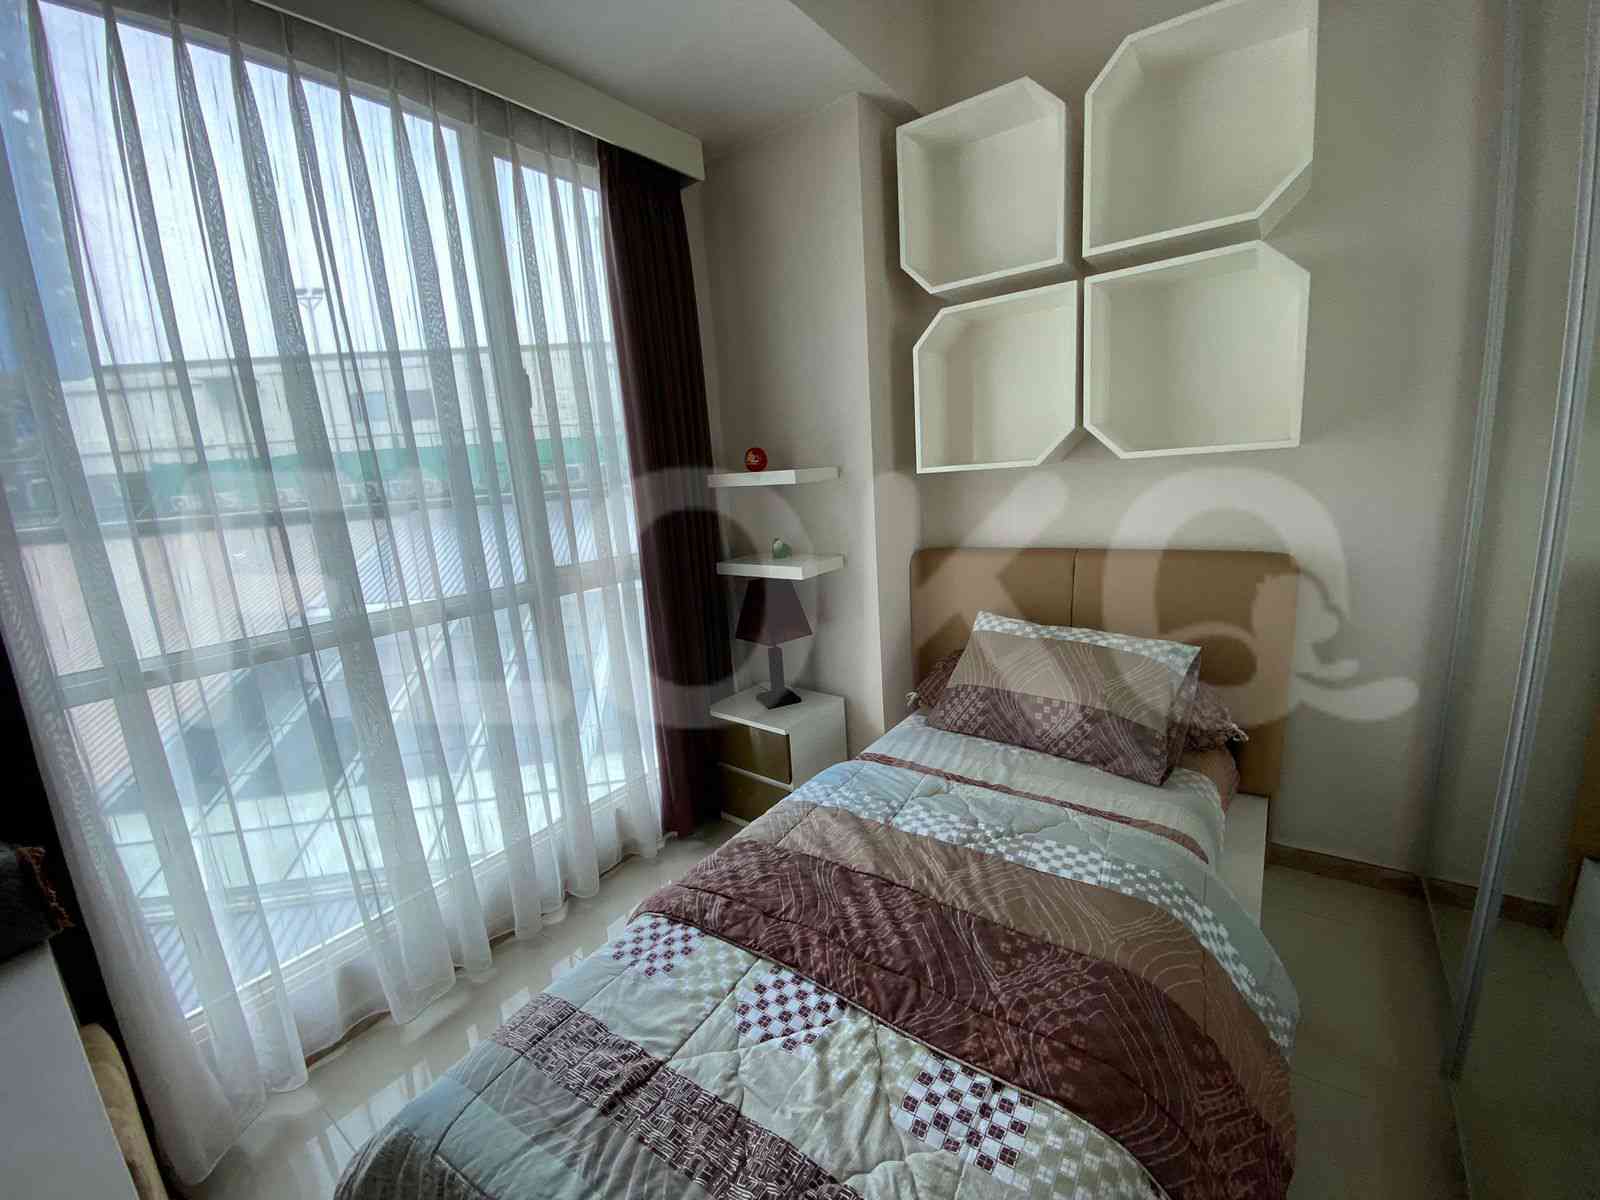 2 Bedroom on 6th Floor for Rent in Casa Grande - ftedfc 2